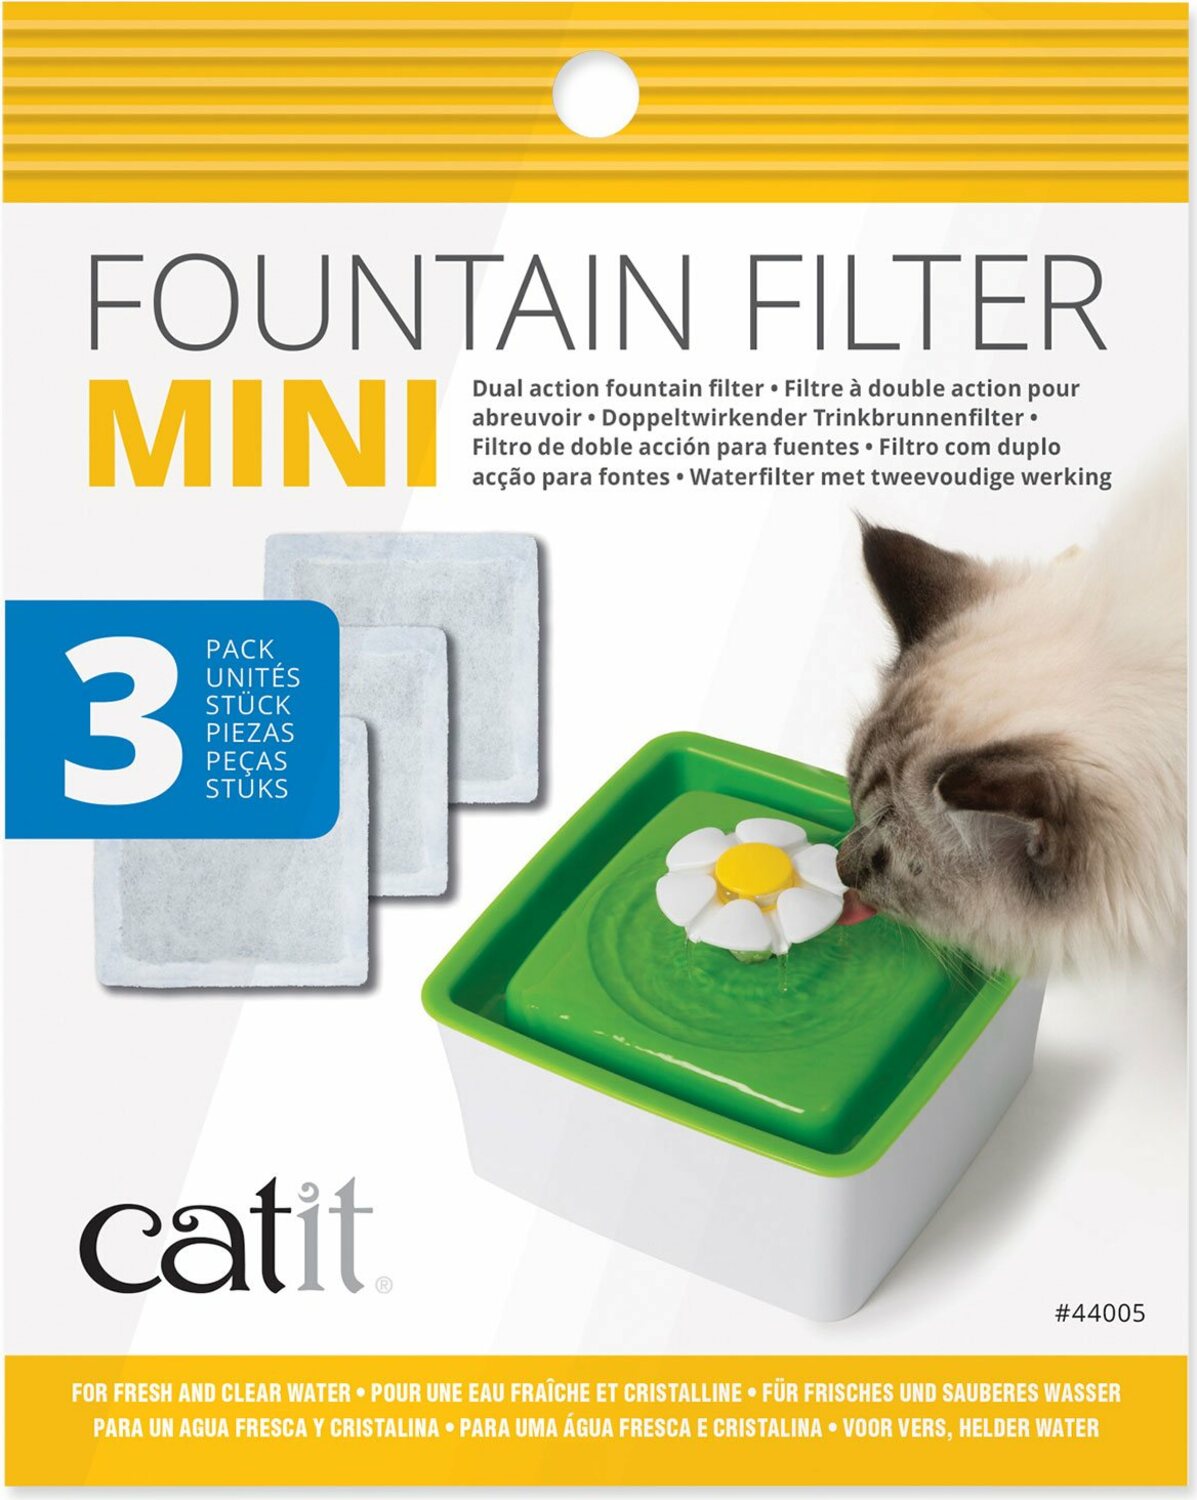 Náplň Catit filtrační pro fontánu Mini 3ks